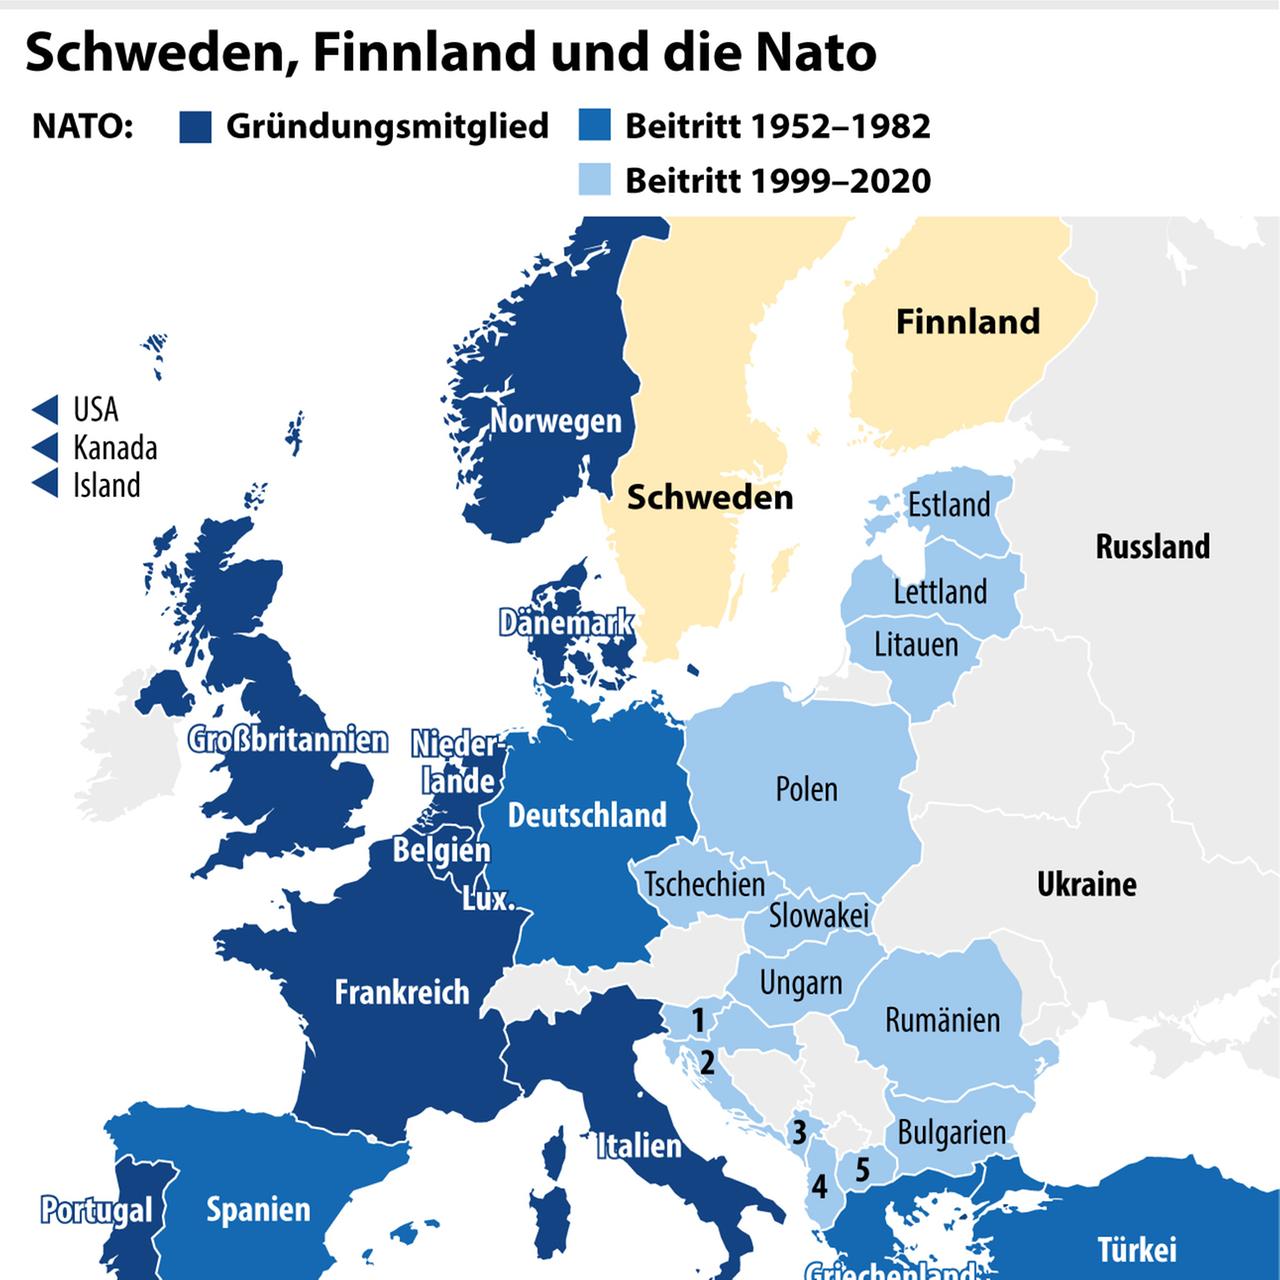 Die Grafik zeigt NATO-Beitritte von 1952 bis 1982 und Beitritte von 1999 bis 2020 sowie Schweden und Finnland, die nicht NATO-Mitglieder sind